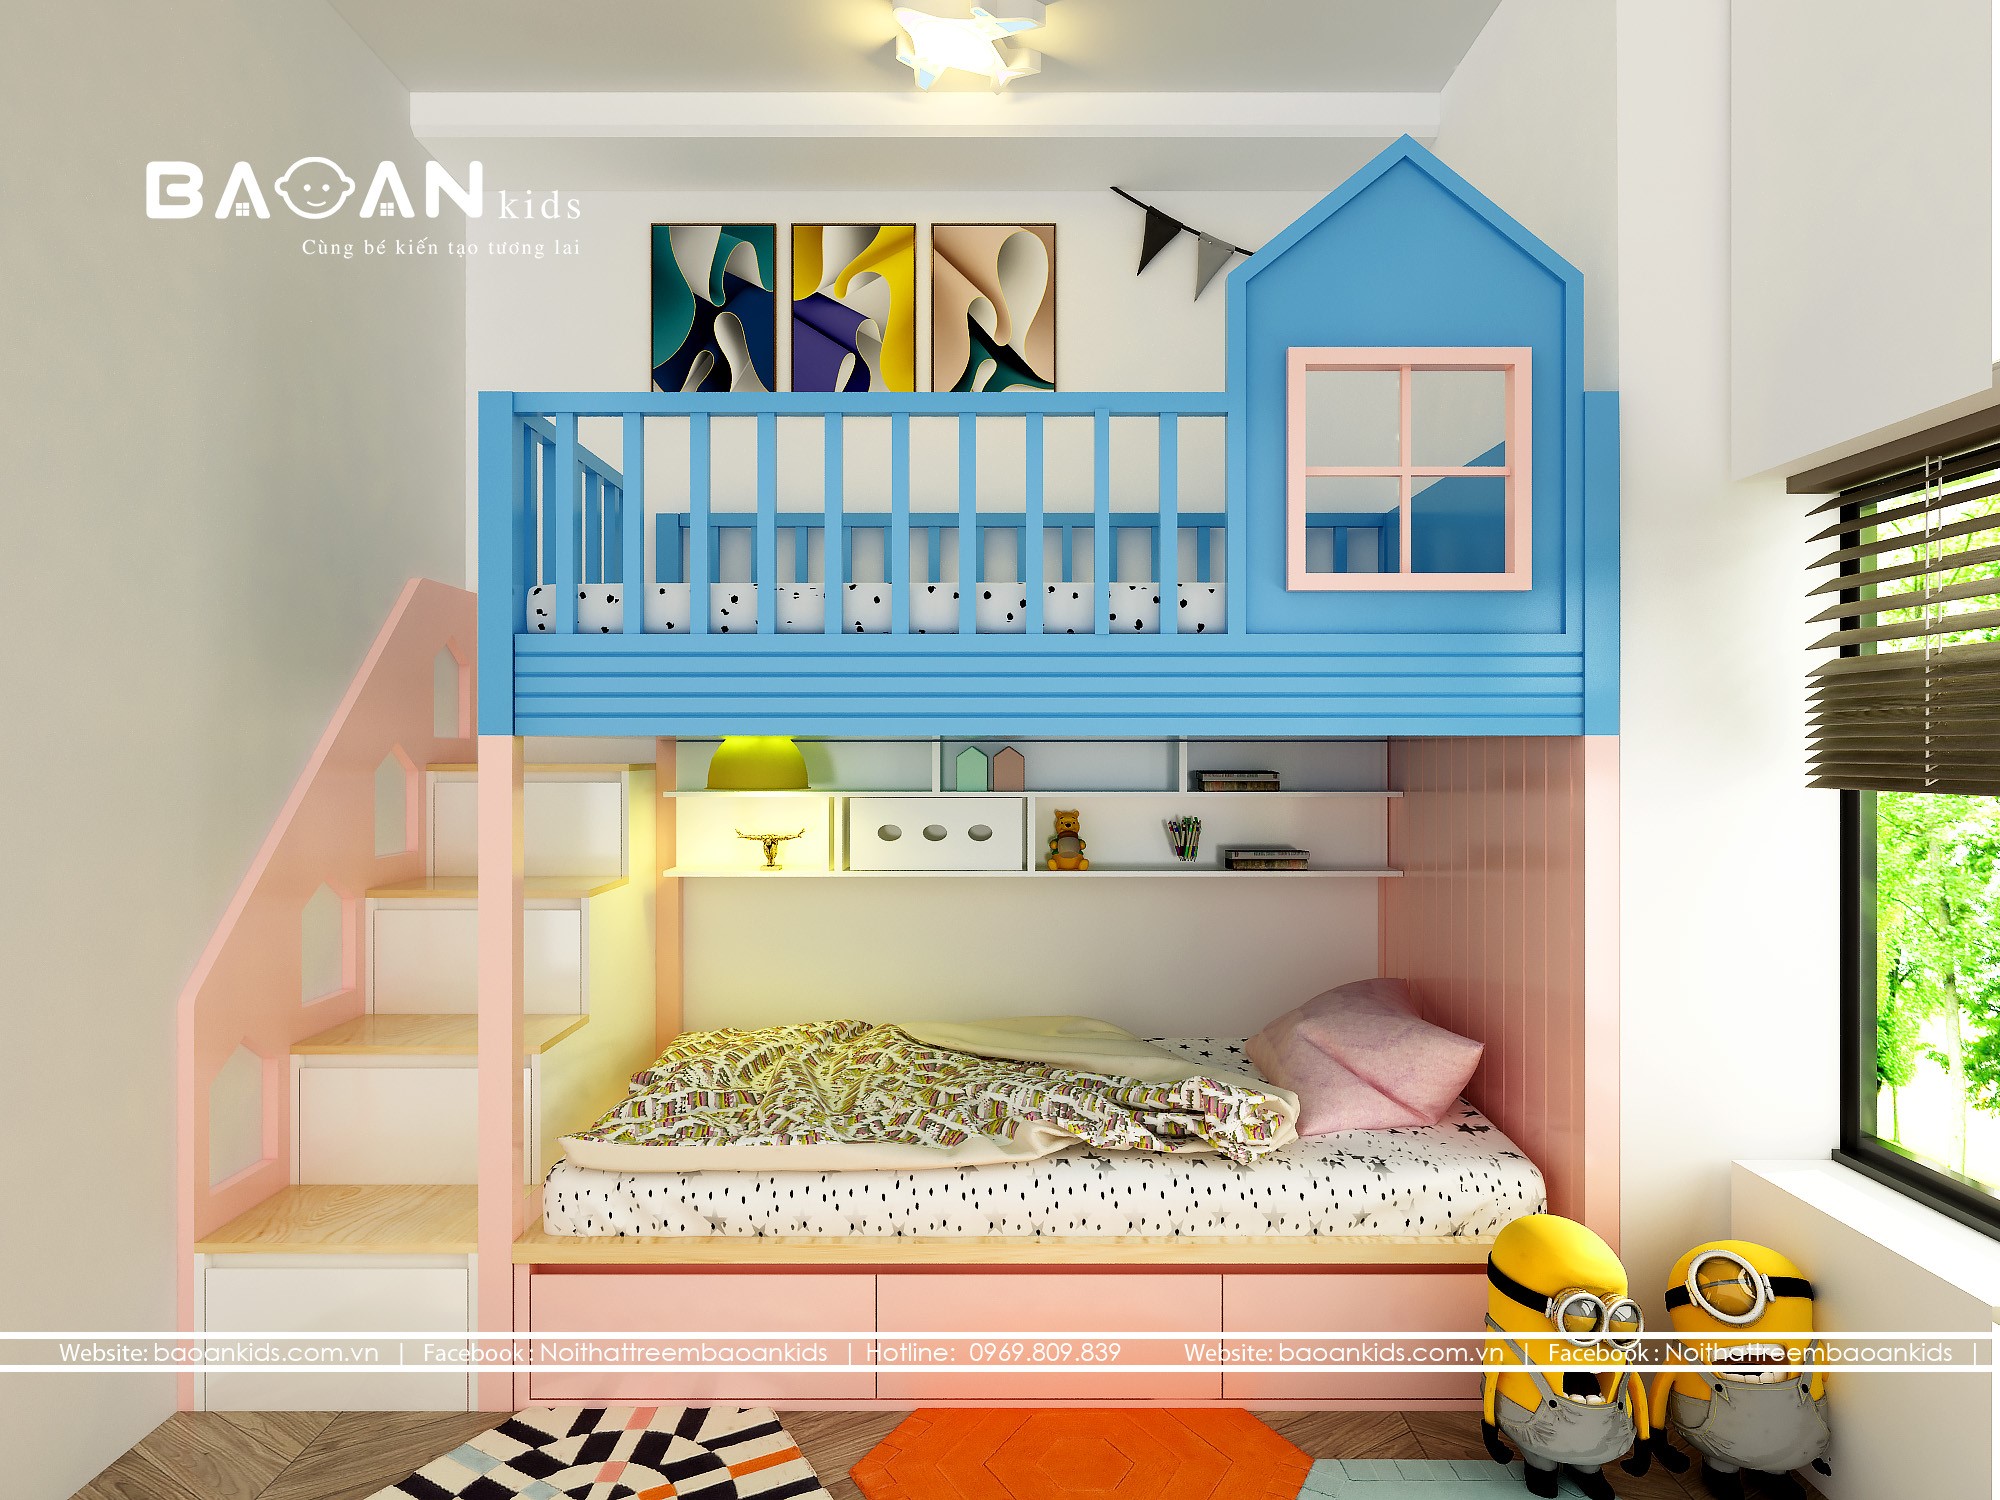 Với các bé gái, tạo không gian phòng ngủ thật tuyệt vời cho từng giấc ngủ là điều tối quan trọng. Những hình ảnh về phòng ngủ bé gái sẽ giúp quý khách thấy được những ý tưởng phù hợp với lứa tuổi và sở thích riêng của con gái mình.